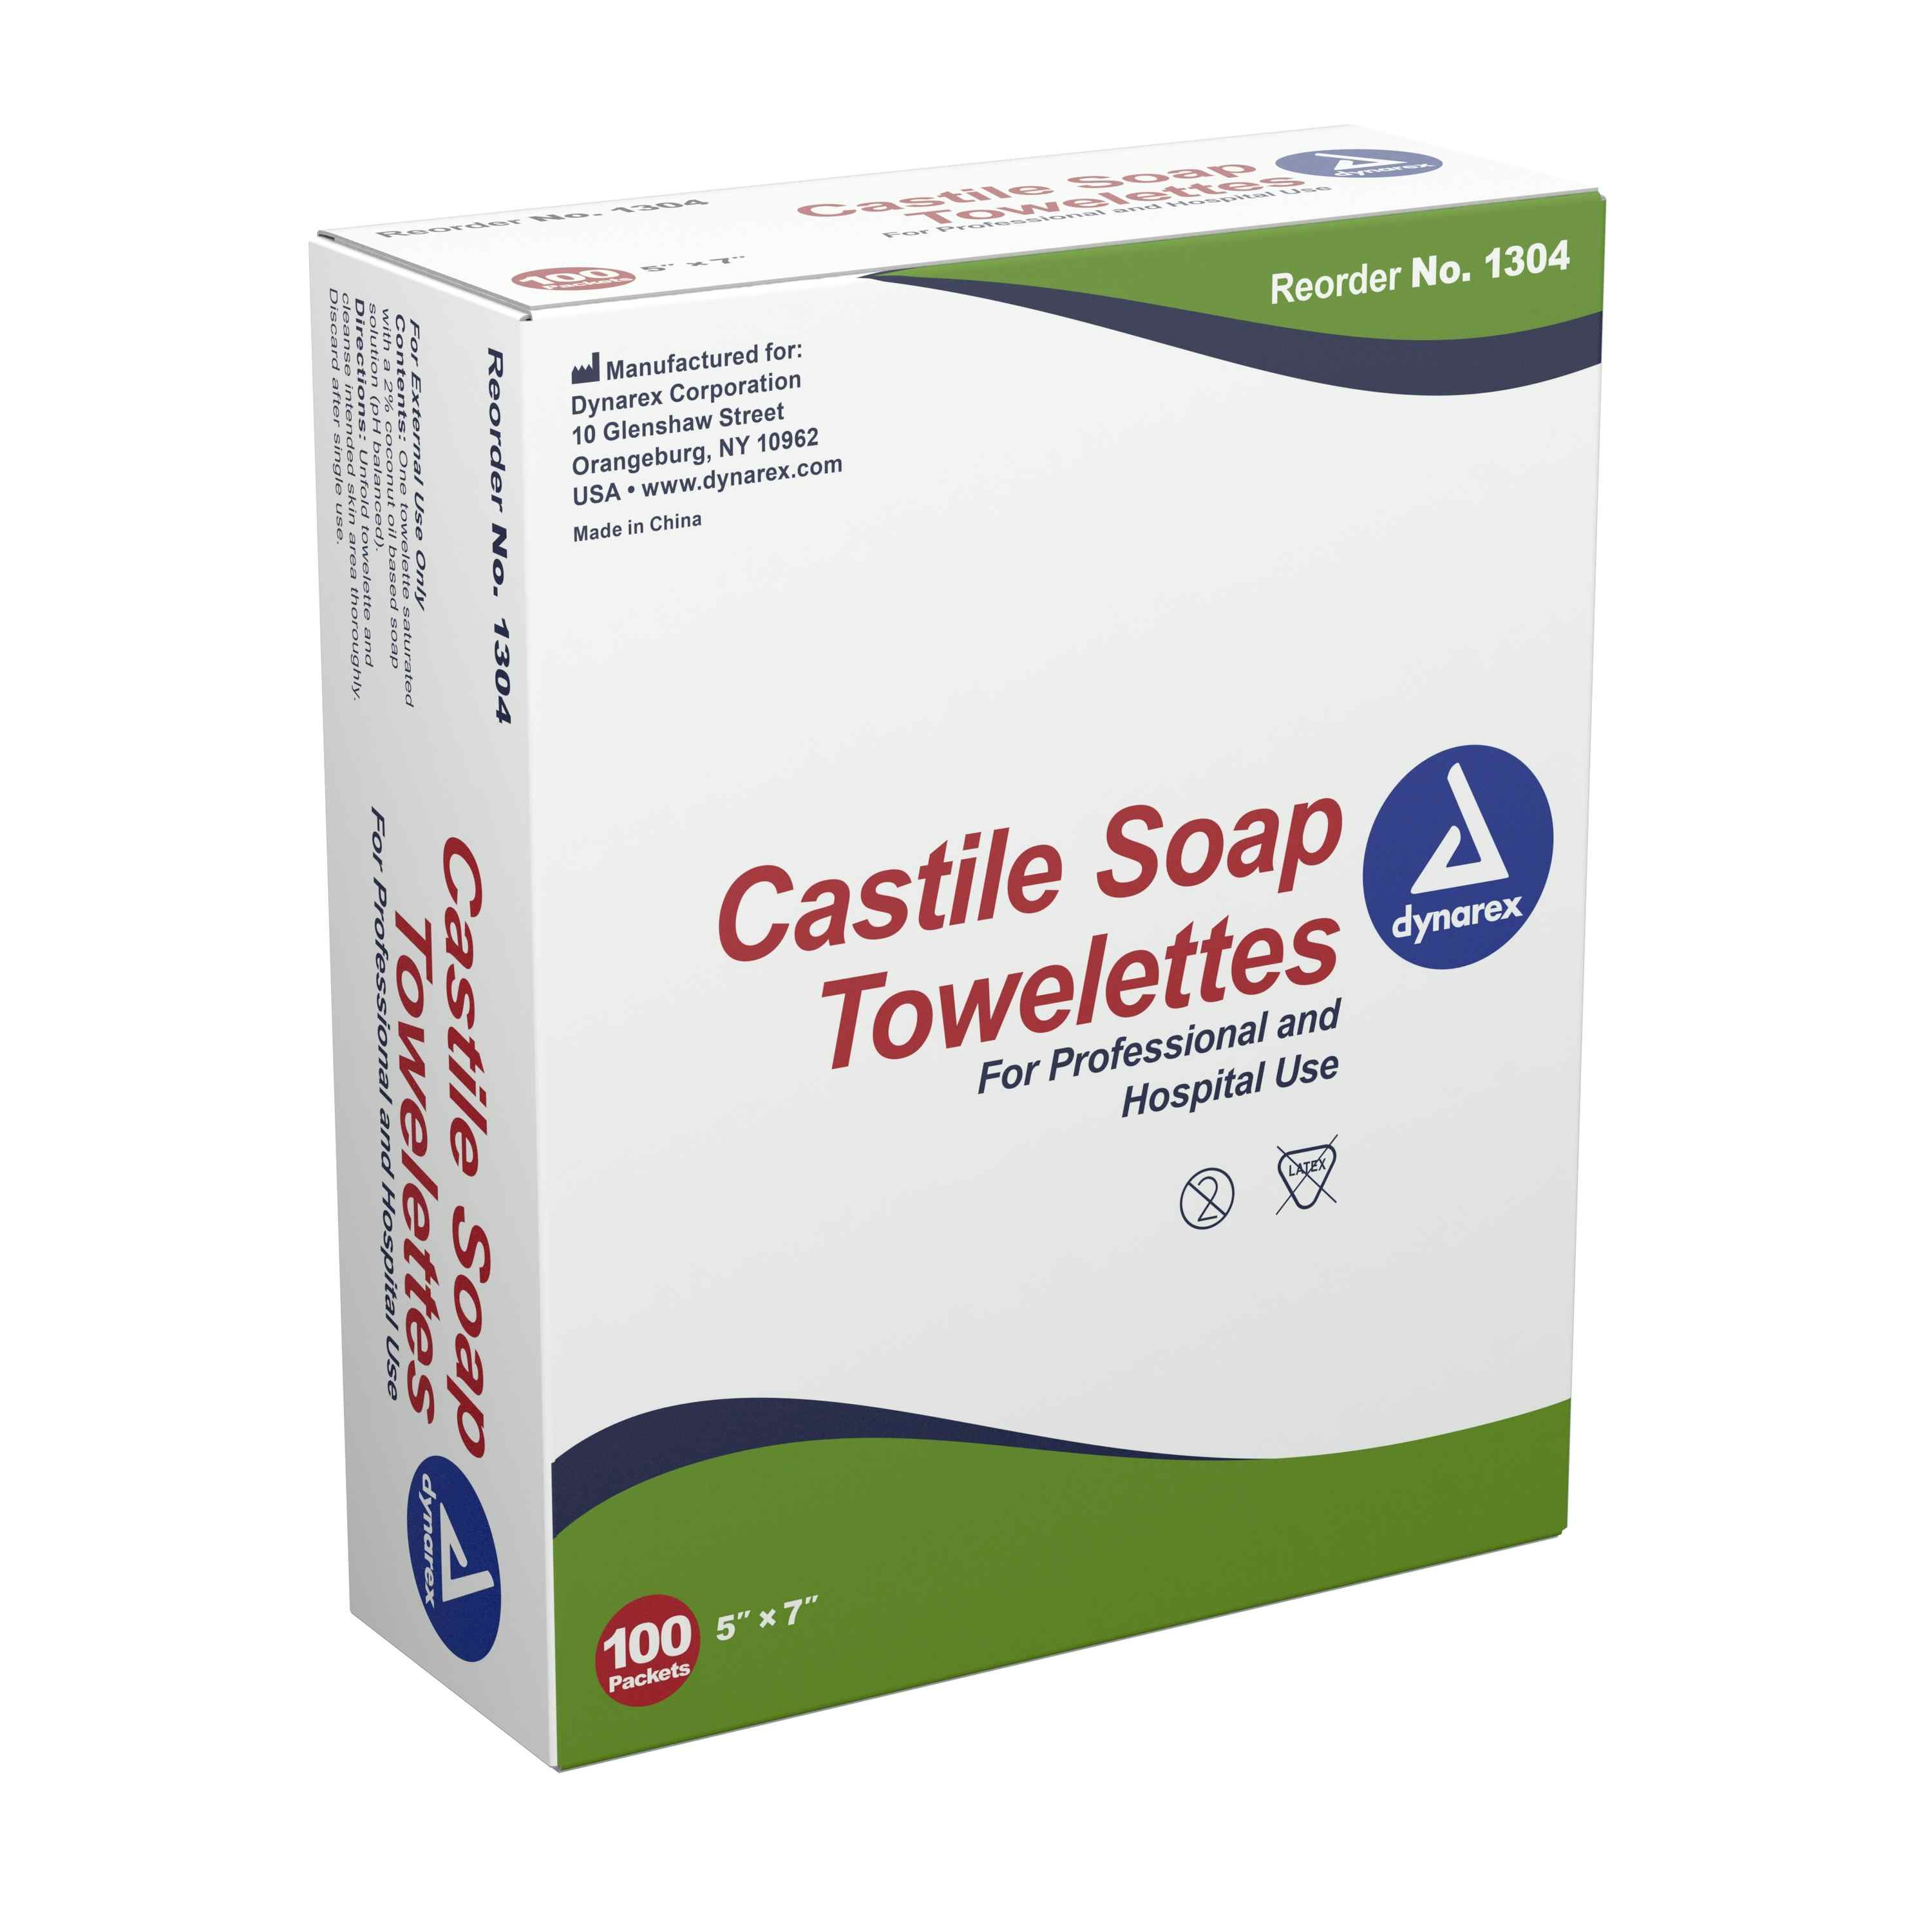 Dynarex Castile Soap Towelettes, 1304, Case of 1000 (10 Boxes)